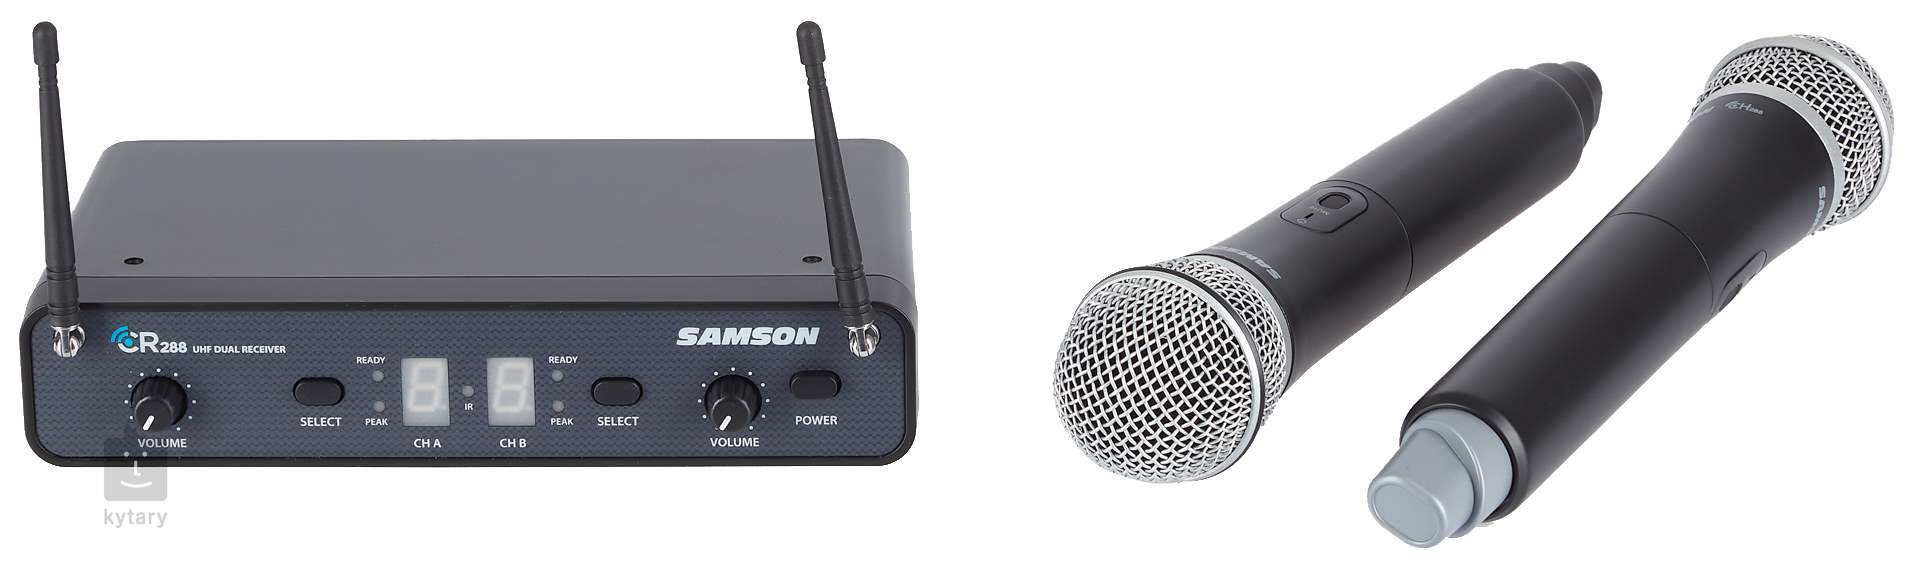 【無線マイク】SAMSON Concert 288 Handheld